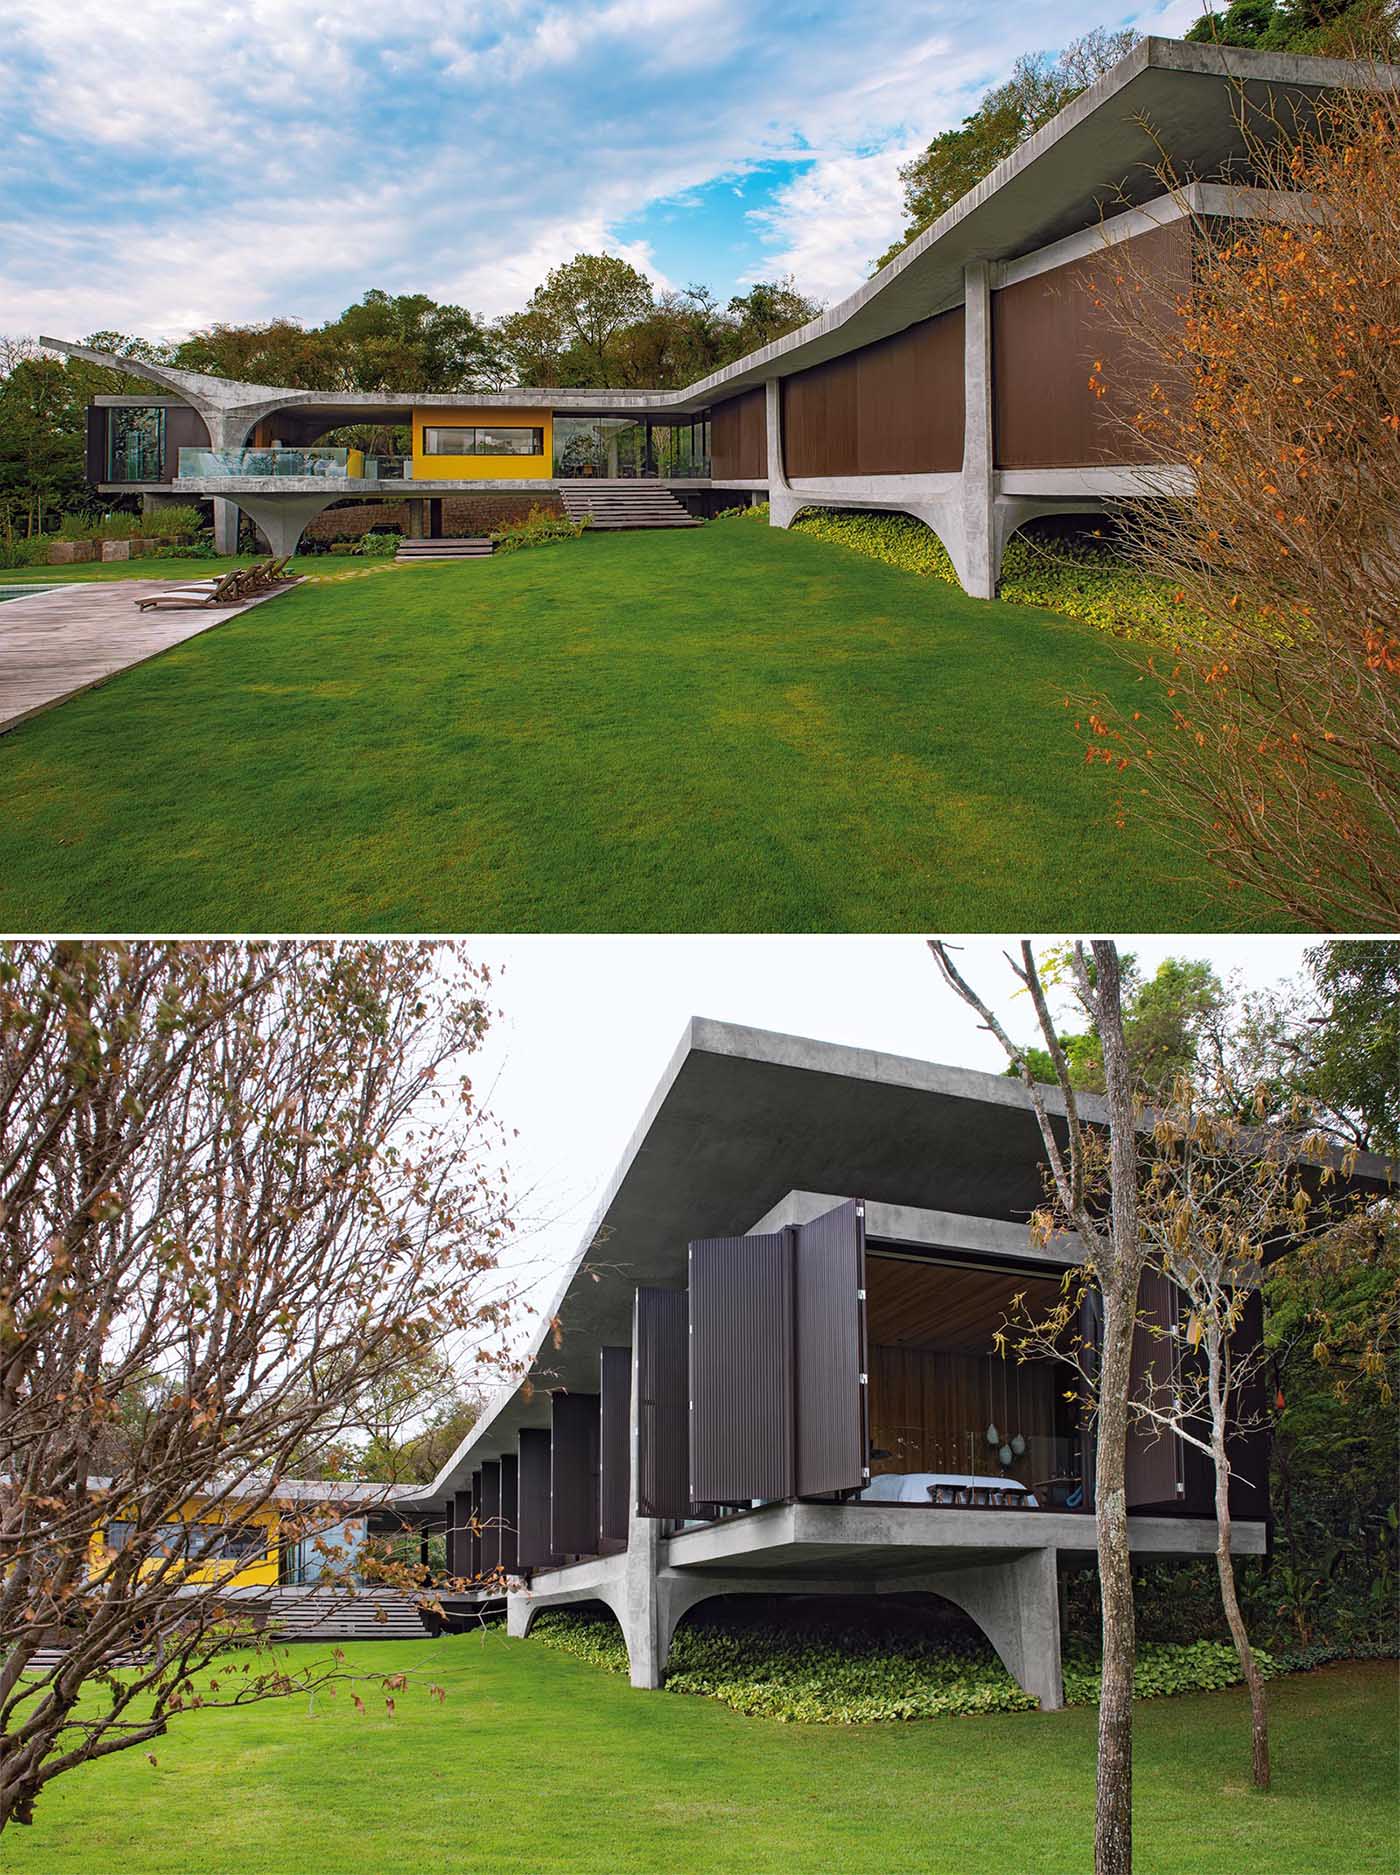 Дизайн этого современного бетонного дома позволяет форме выглядеть так, как будто она парит над ландшафтом, а колонны добавляют скульптурный элемент.